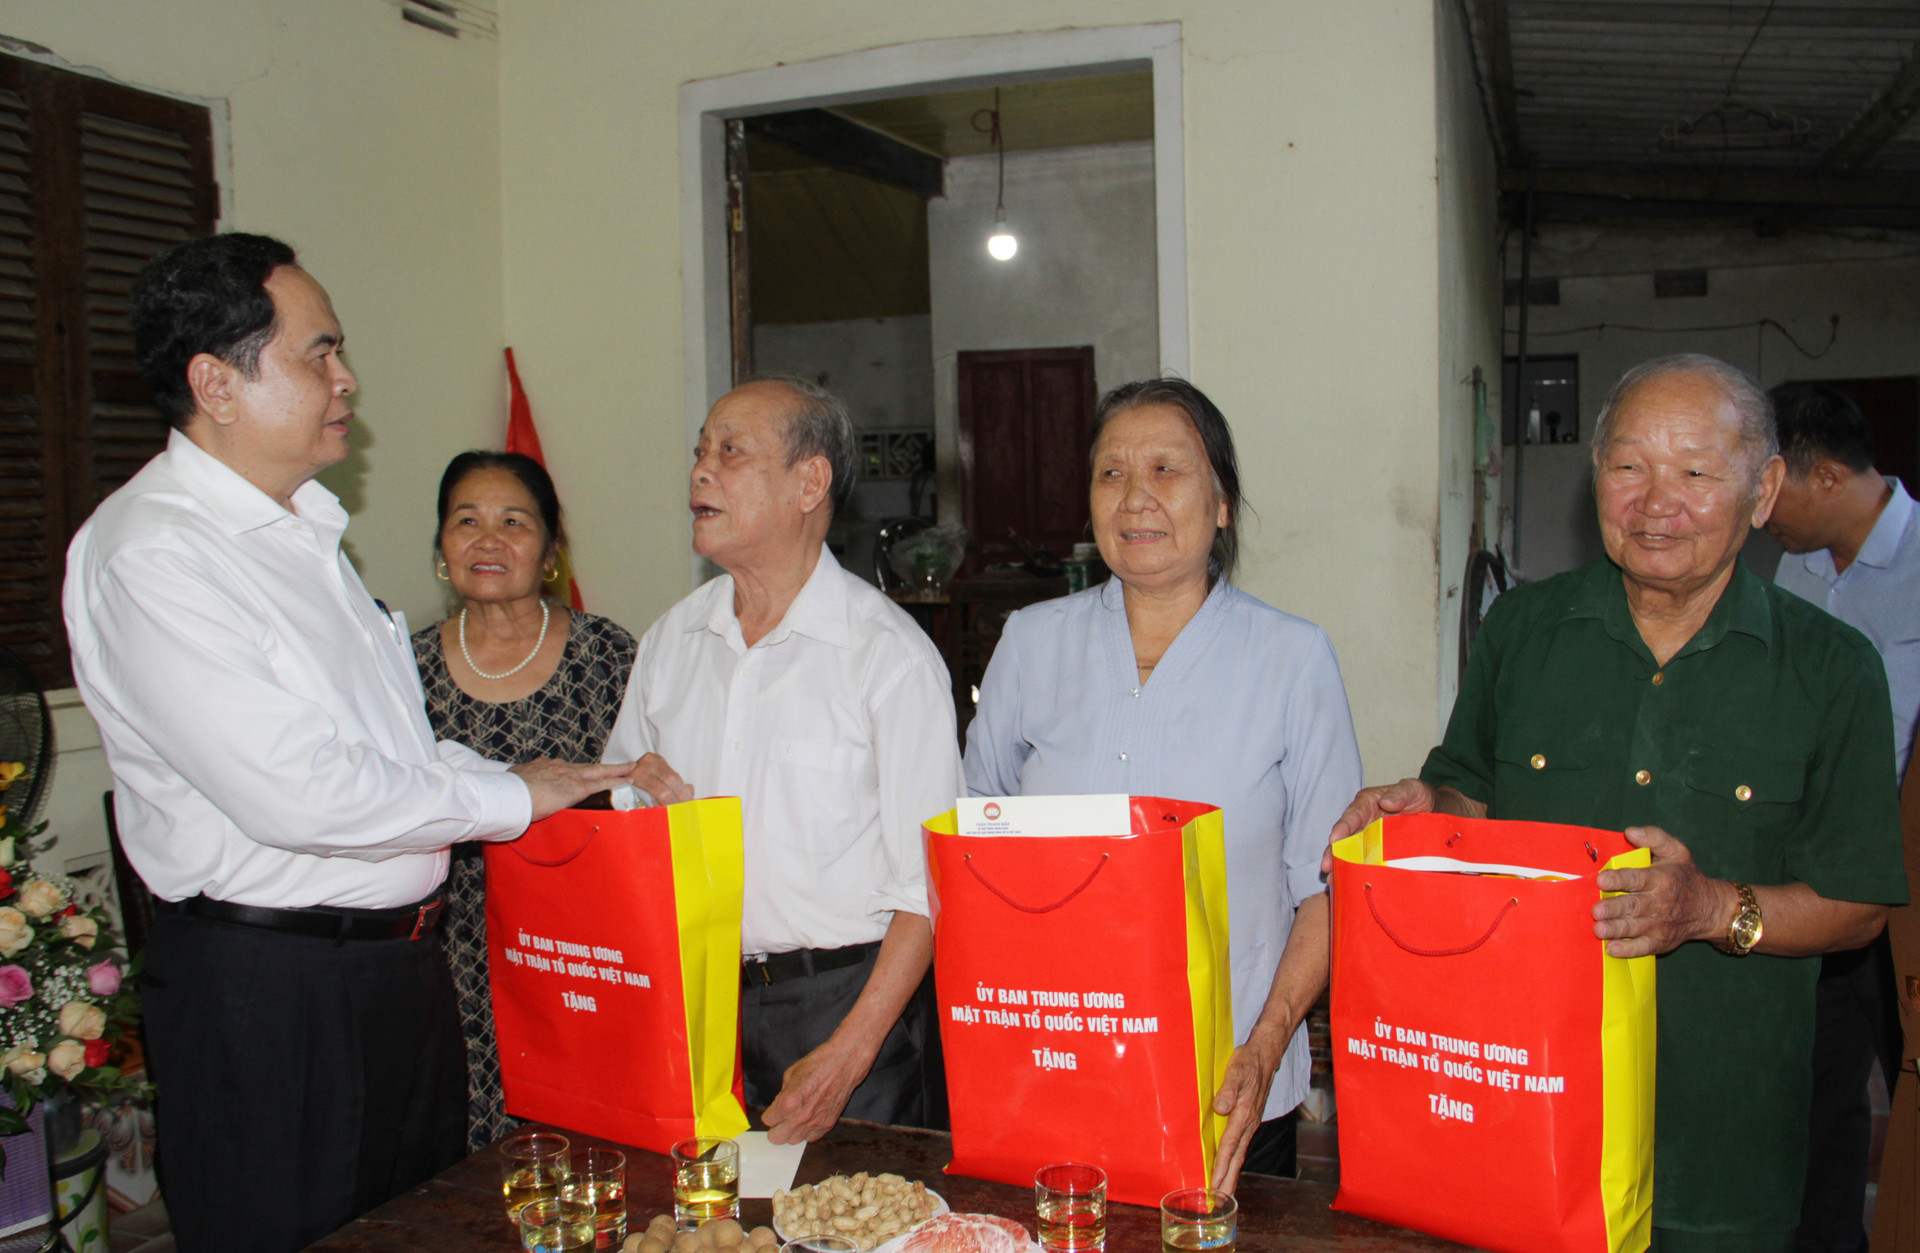 1.Thăm và tặng quà cho 3 đối tượng chính sách trên địa bàn thị trấn Anh Sơn, huyện Anh Sơn.